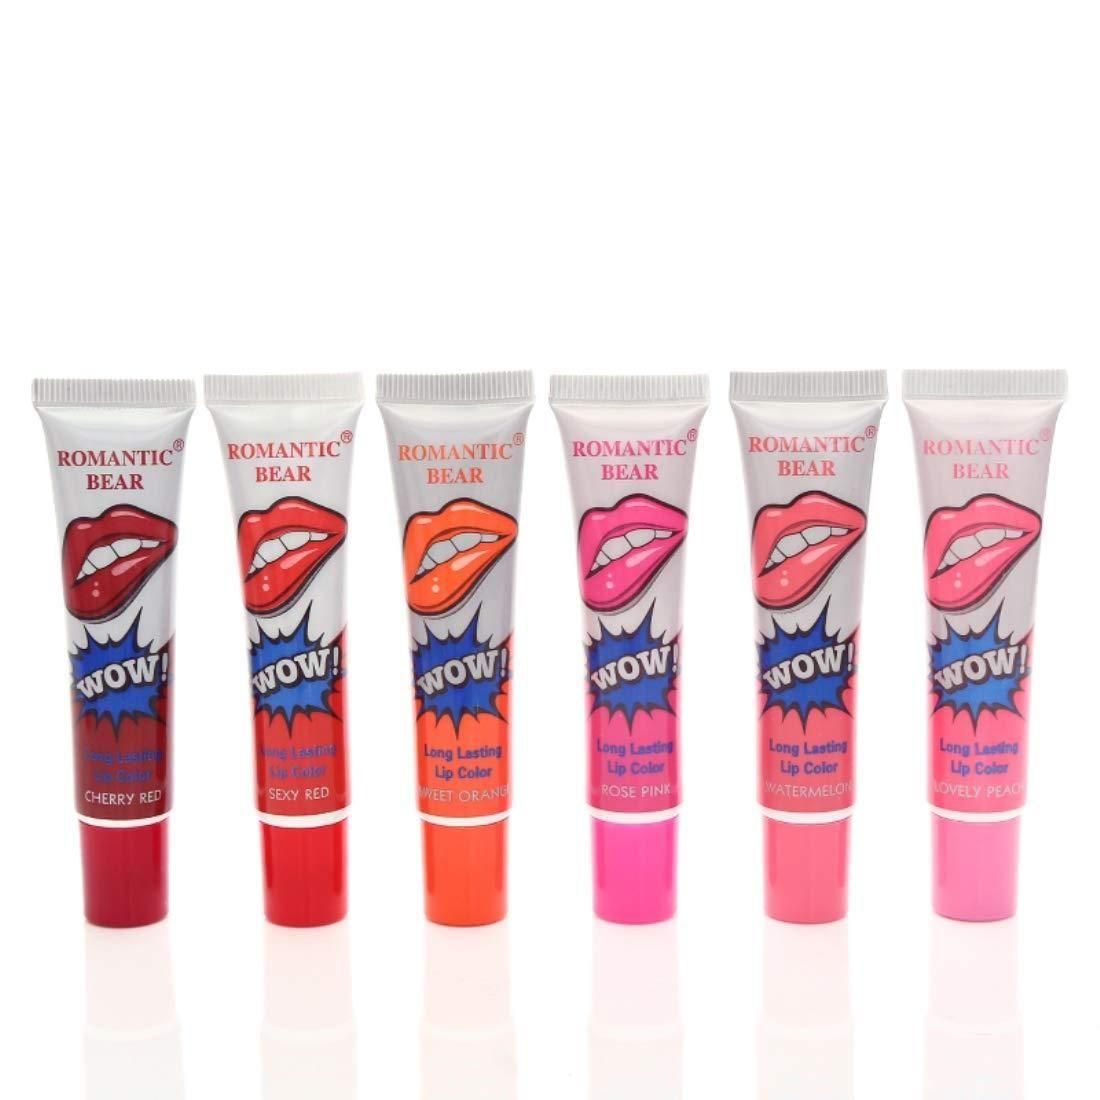 Beauty Red Wow Makeup Matte Lip Gloss